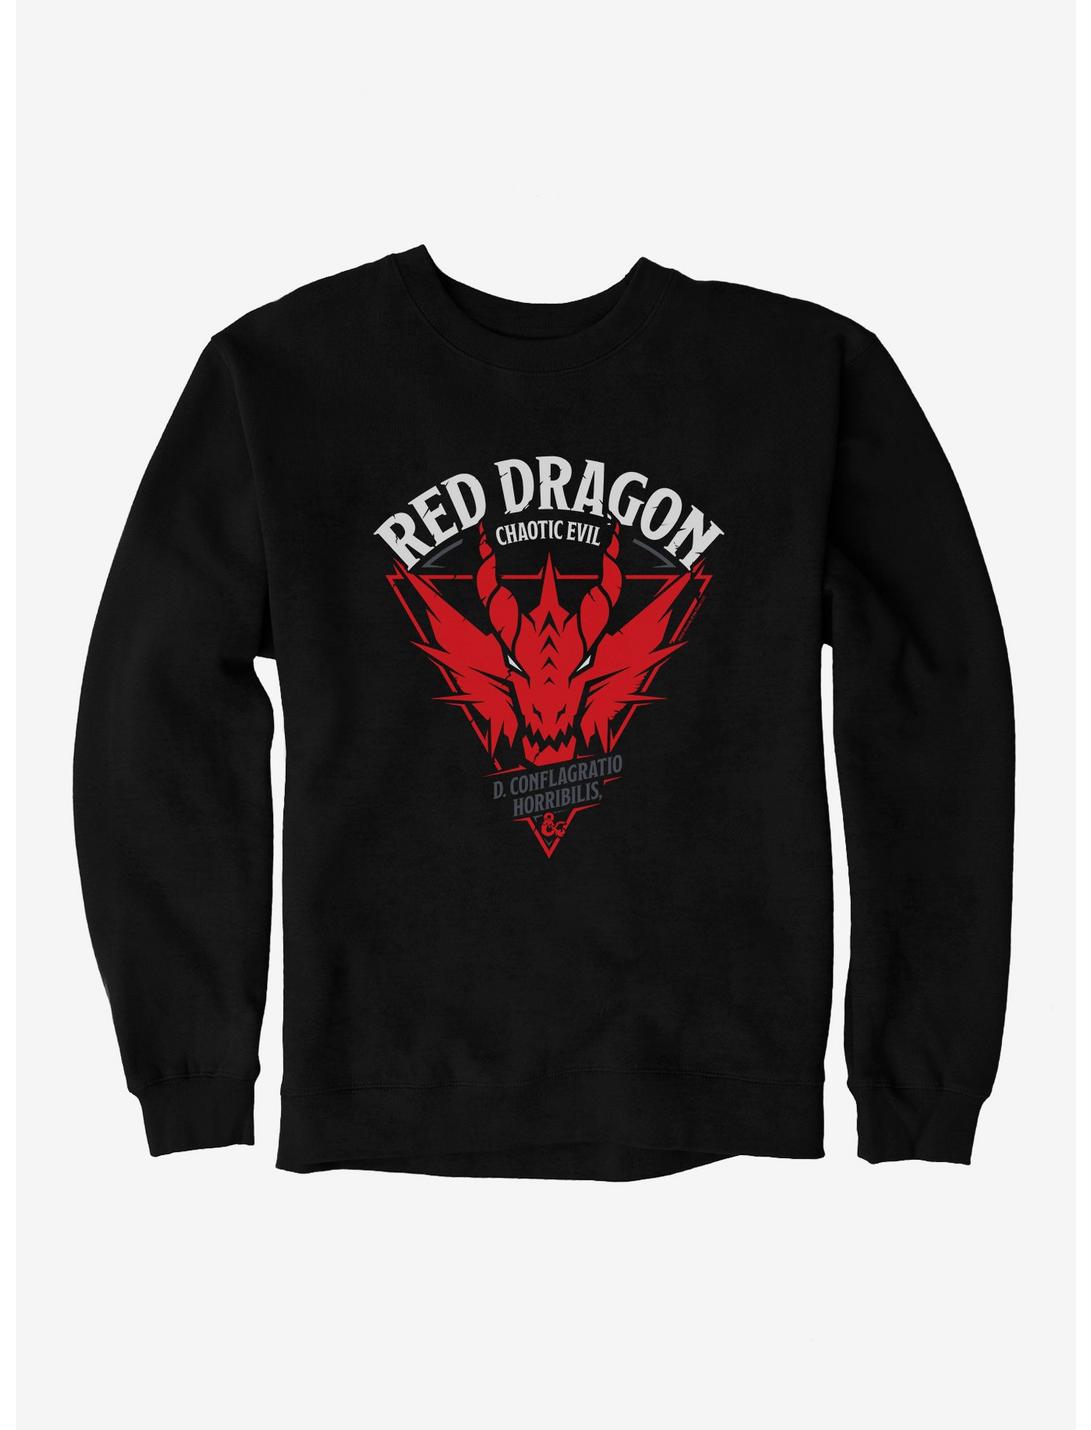 Dungeons & Dragons Red Dragon Sweatshirt, BLACK, hi-res